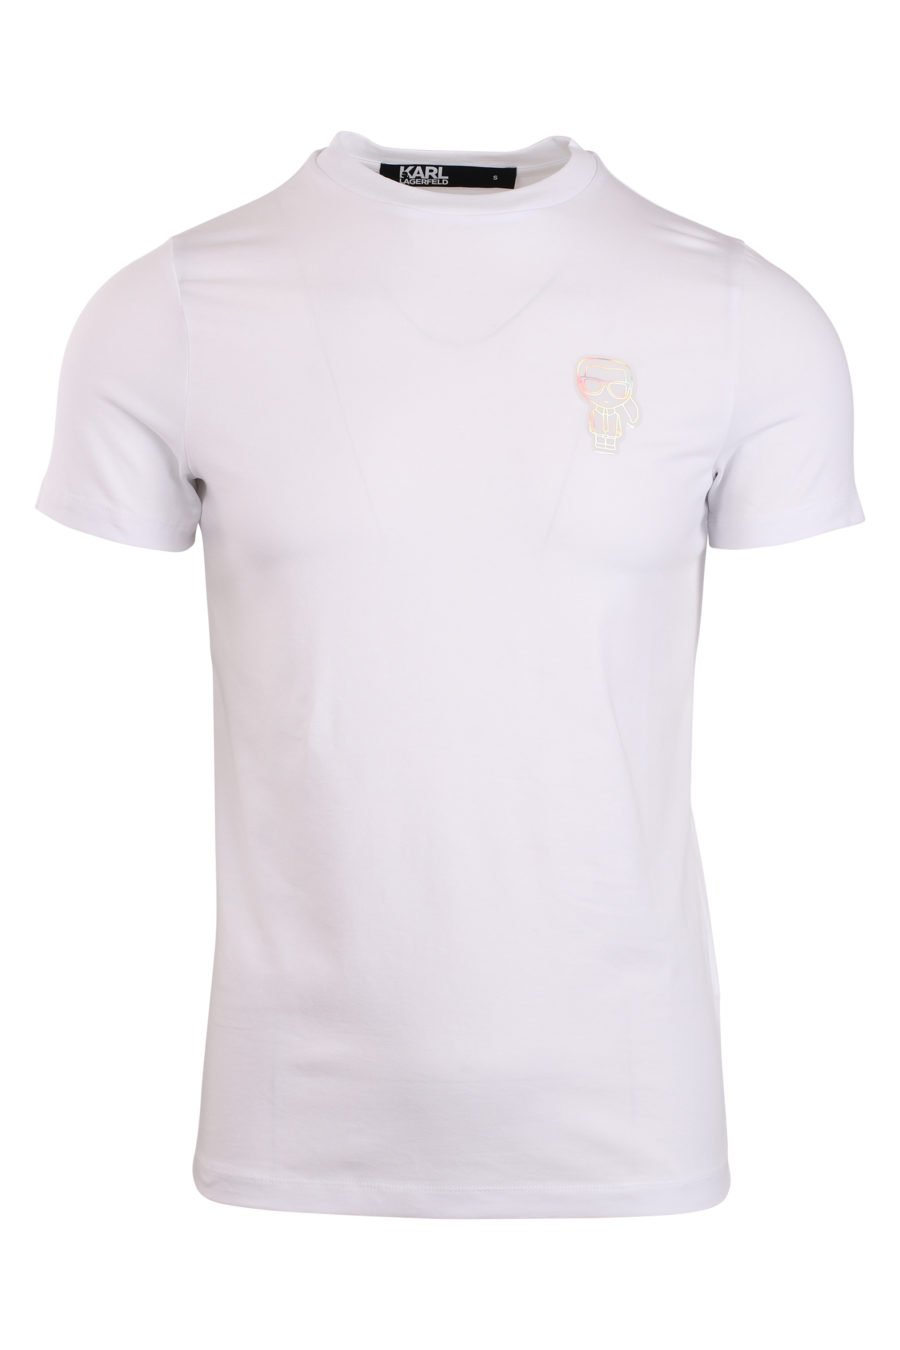 Weißes T-Shirt mit Logo in kleiner Lacksilhouette - IMG 0867